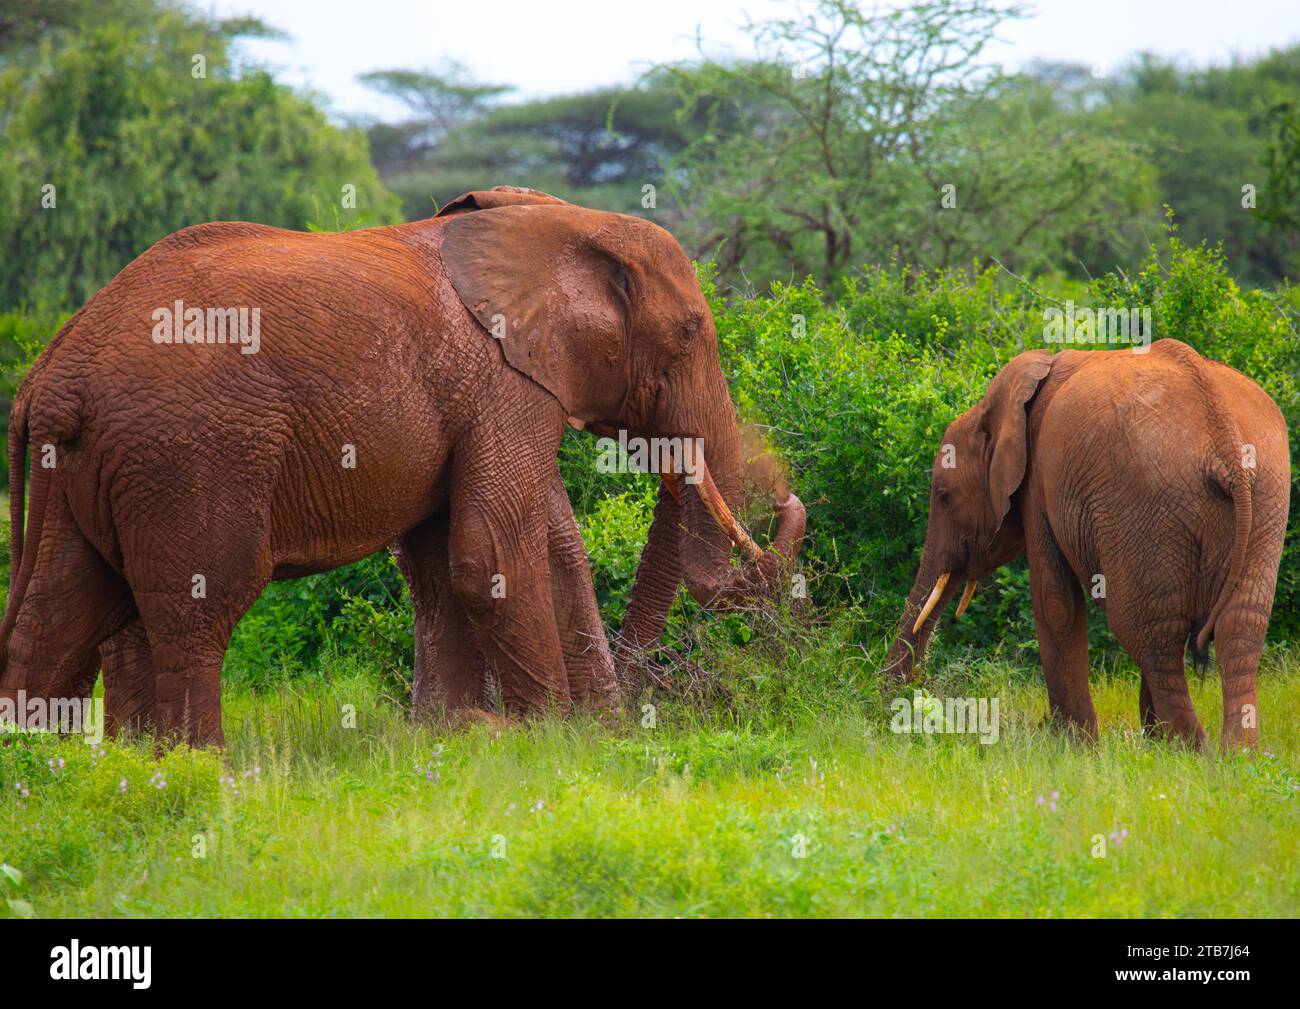 Elefante poniendo barro en su cuerpo, Condado de Samburu, Reserva Nacional de Samburu, Kenia Foto de stock